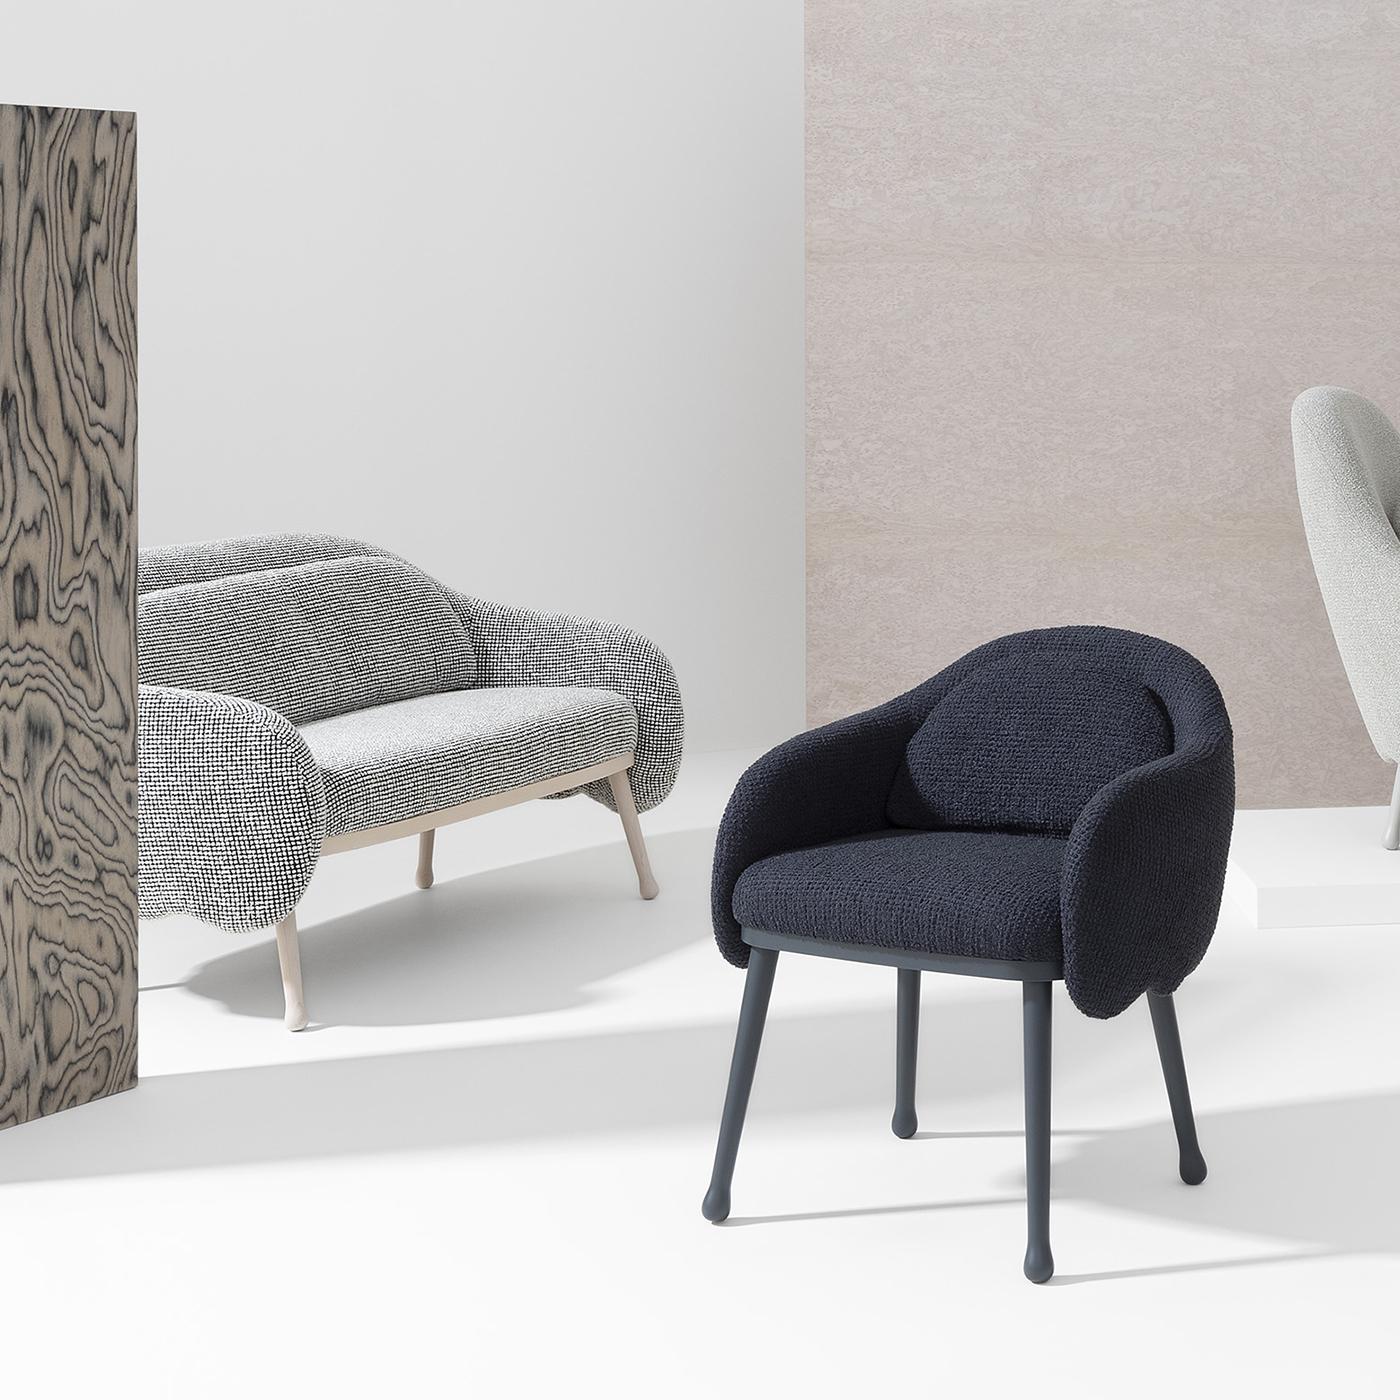 Dieser moderne Sessel, der Komfort und Entspannung ausstrahlt, ist ein großartiger Entwurf von Cristina Celestino. Er ruht auf einem Gestell aus massivem Buchenholz mit vier schwarz lackierten Beinen mit runden Füßen und Filzpolstern. Die Sitzfläche